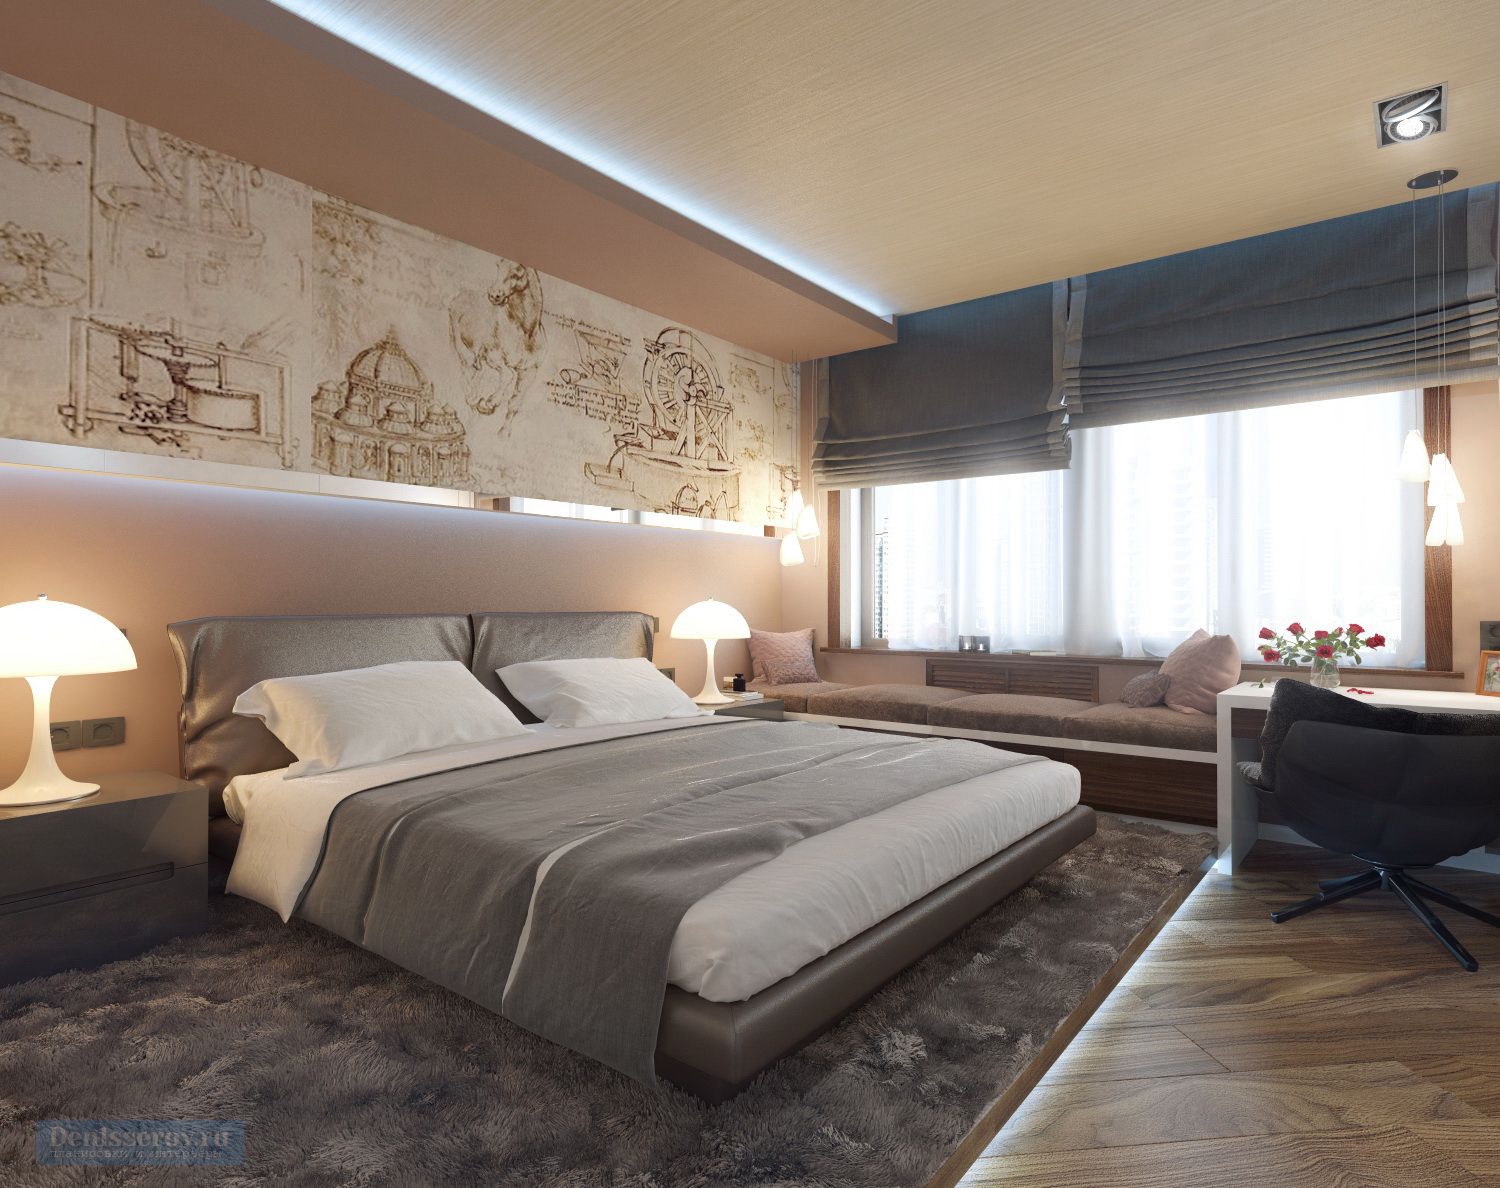 Дизайн проект интерьера мужской спальни 16 кв.м. с гардеробной комнатой